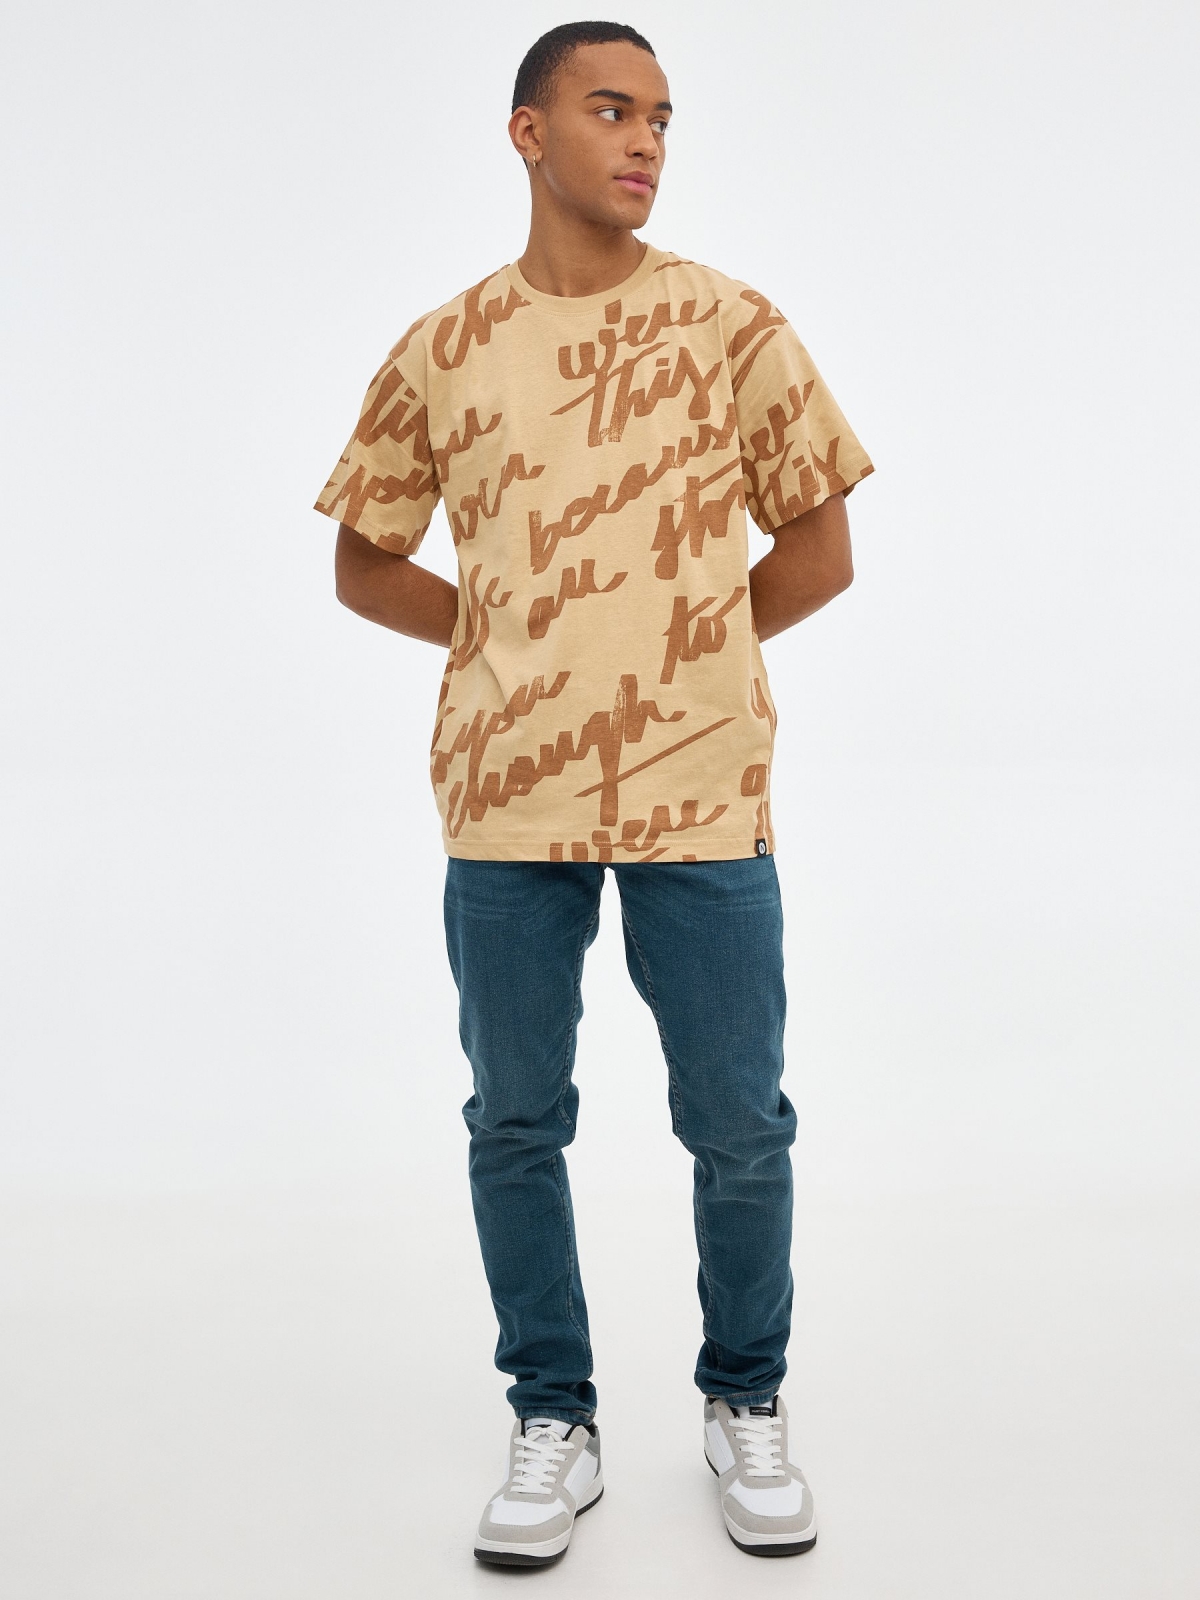 Camiseta print de texto marrón tierra vista general frontal